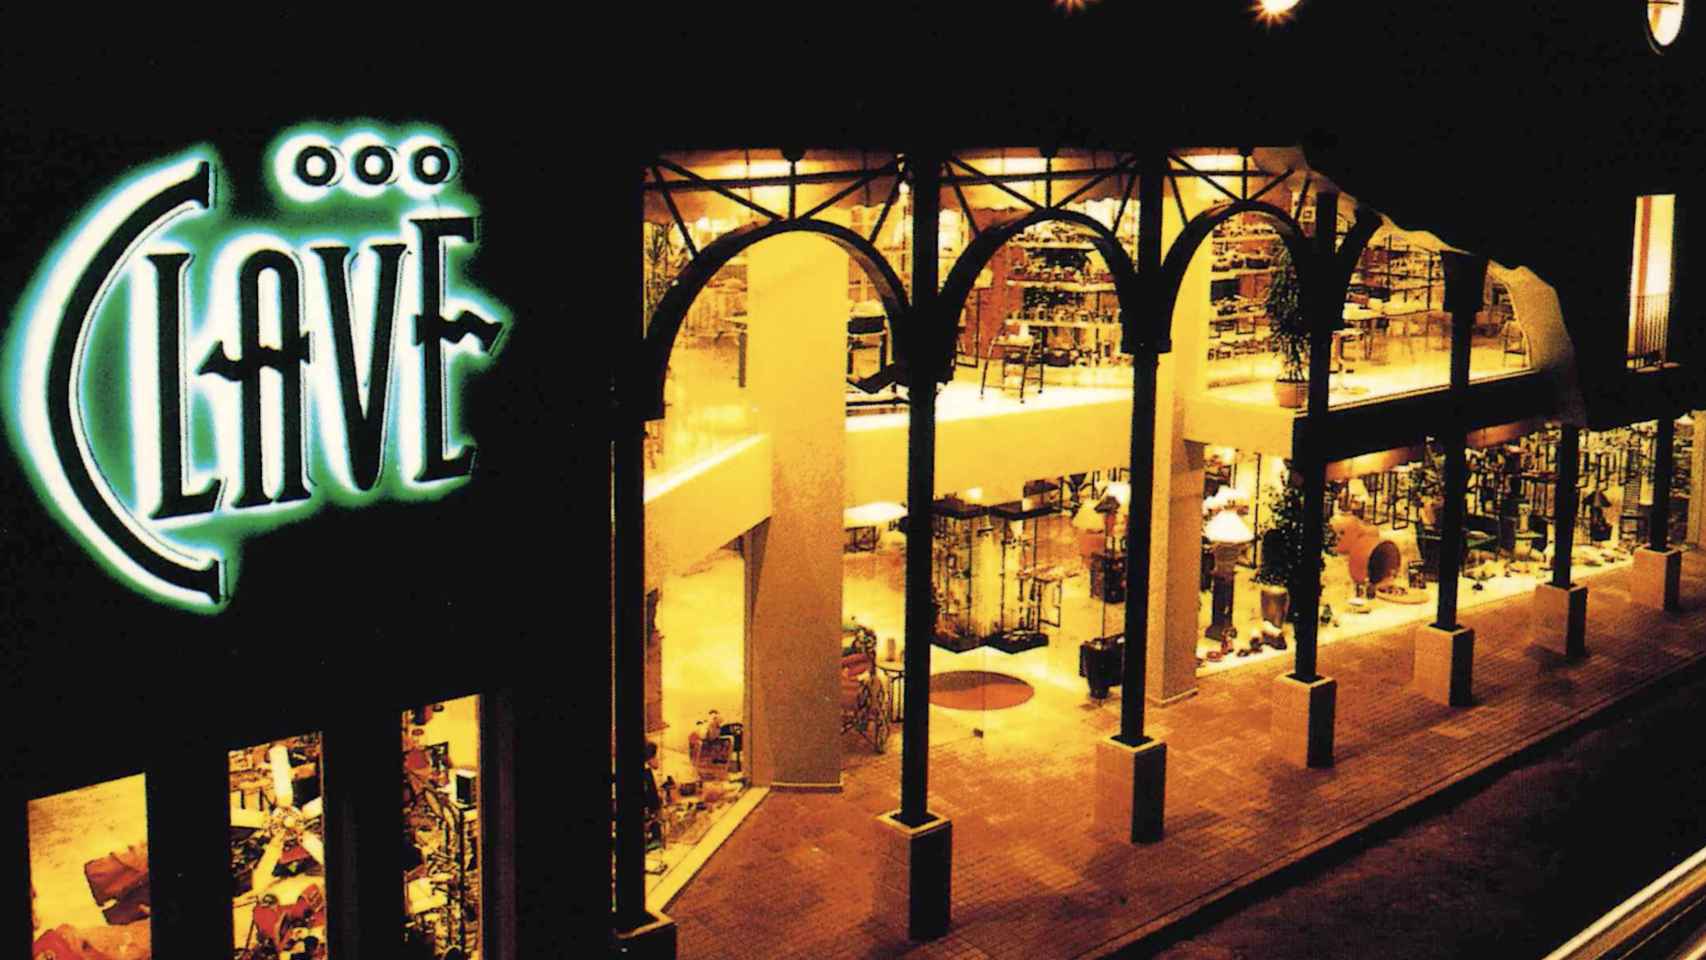 Clave, la primera tienda abierta por la familia Grimalt y precursora de la cadena Ale-Hop.